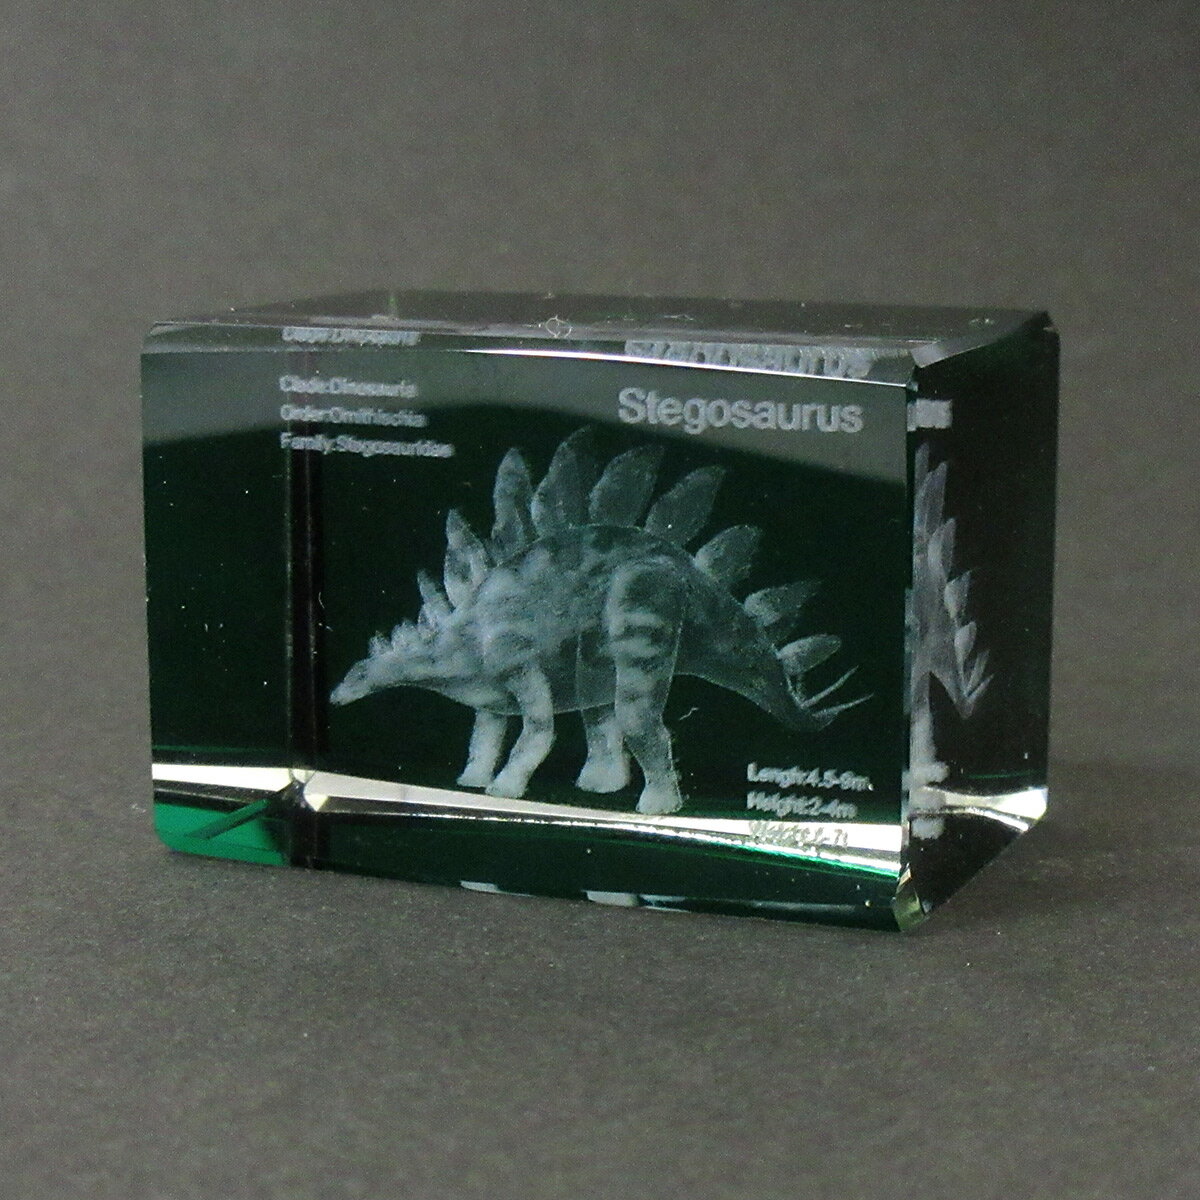 3Dクリスタル M ステゴサウルス グリーン ガラス オブジェ ペーパーウェイト 恐竜 誕生日 クリスマス プレゼント ギフト 120-689